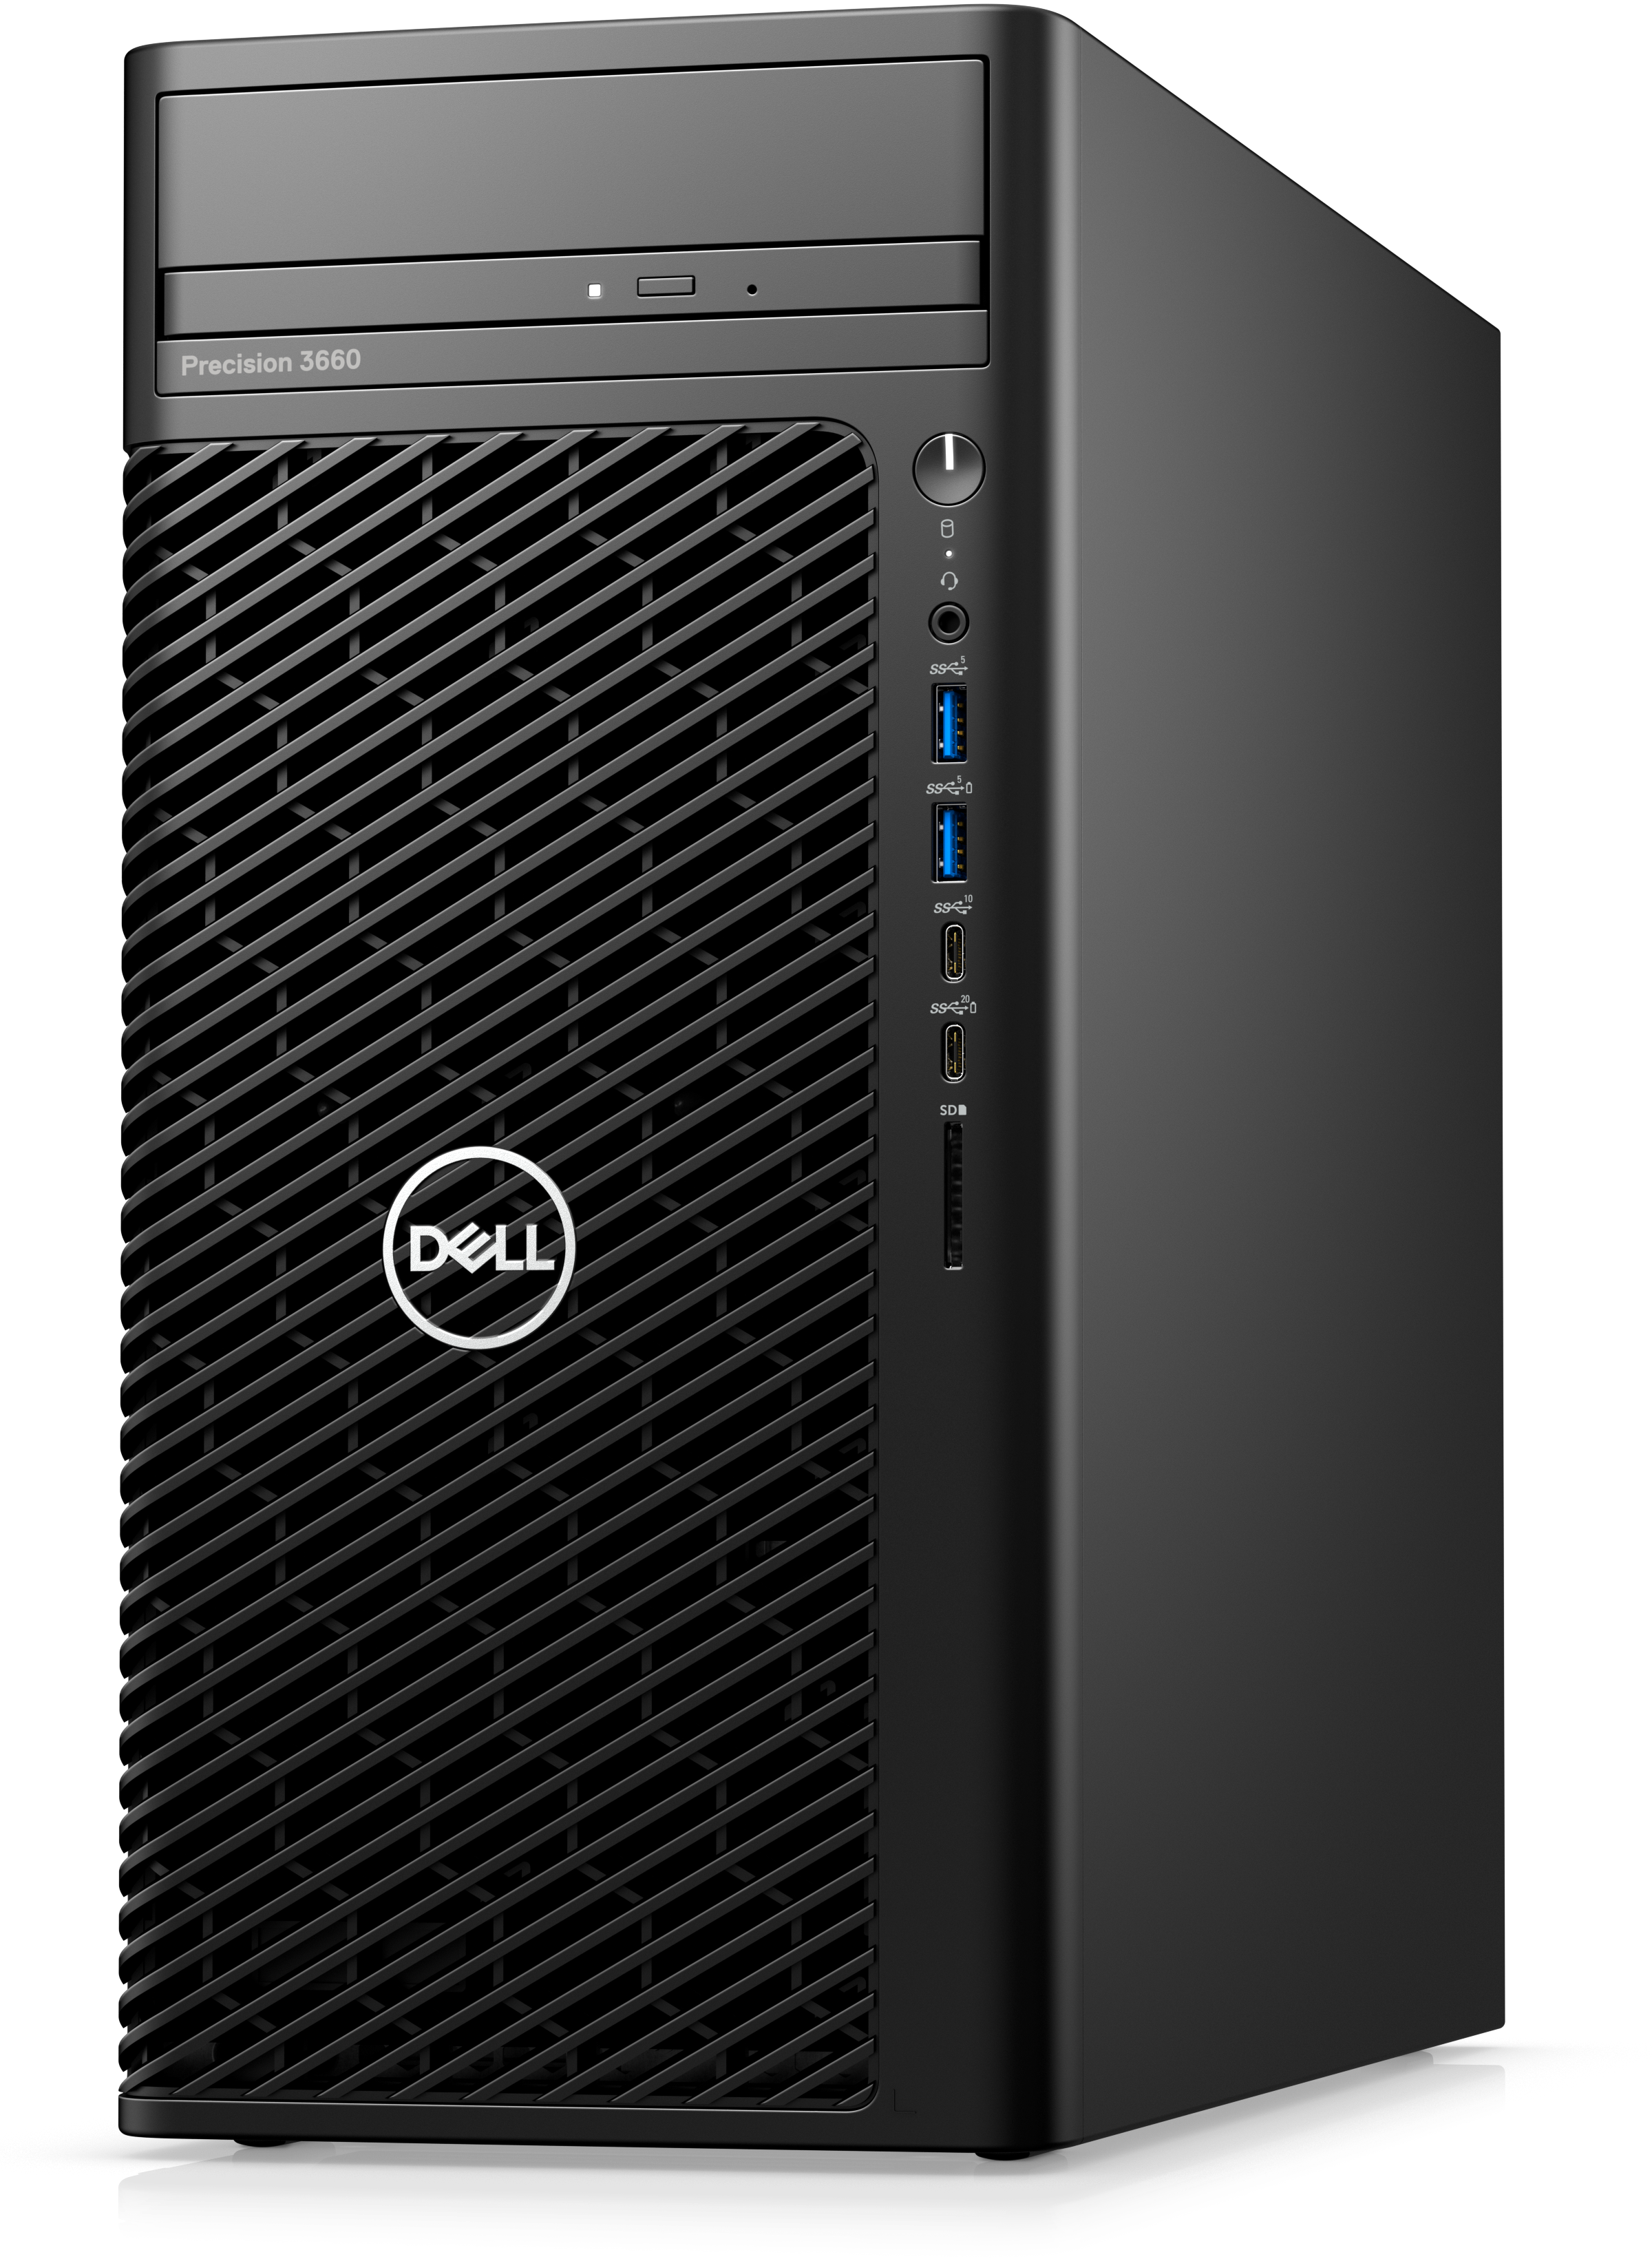 Dell Precision T3660 Work Station, i7-12700 (12 core 25MB cache), 8GB, 512 SSD, No Monitor, DVDRW, 3 Yrs PS, 500W, Windows 10 Pro